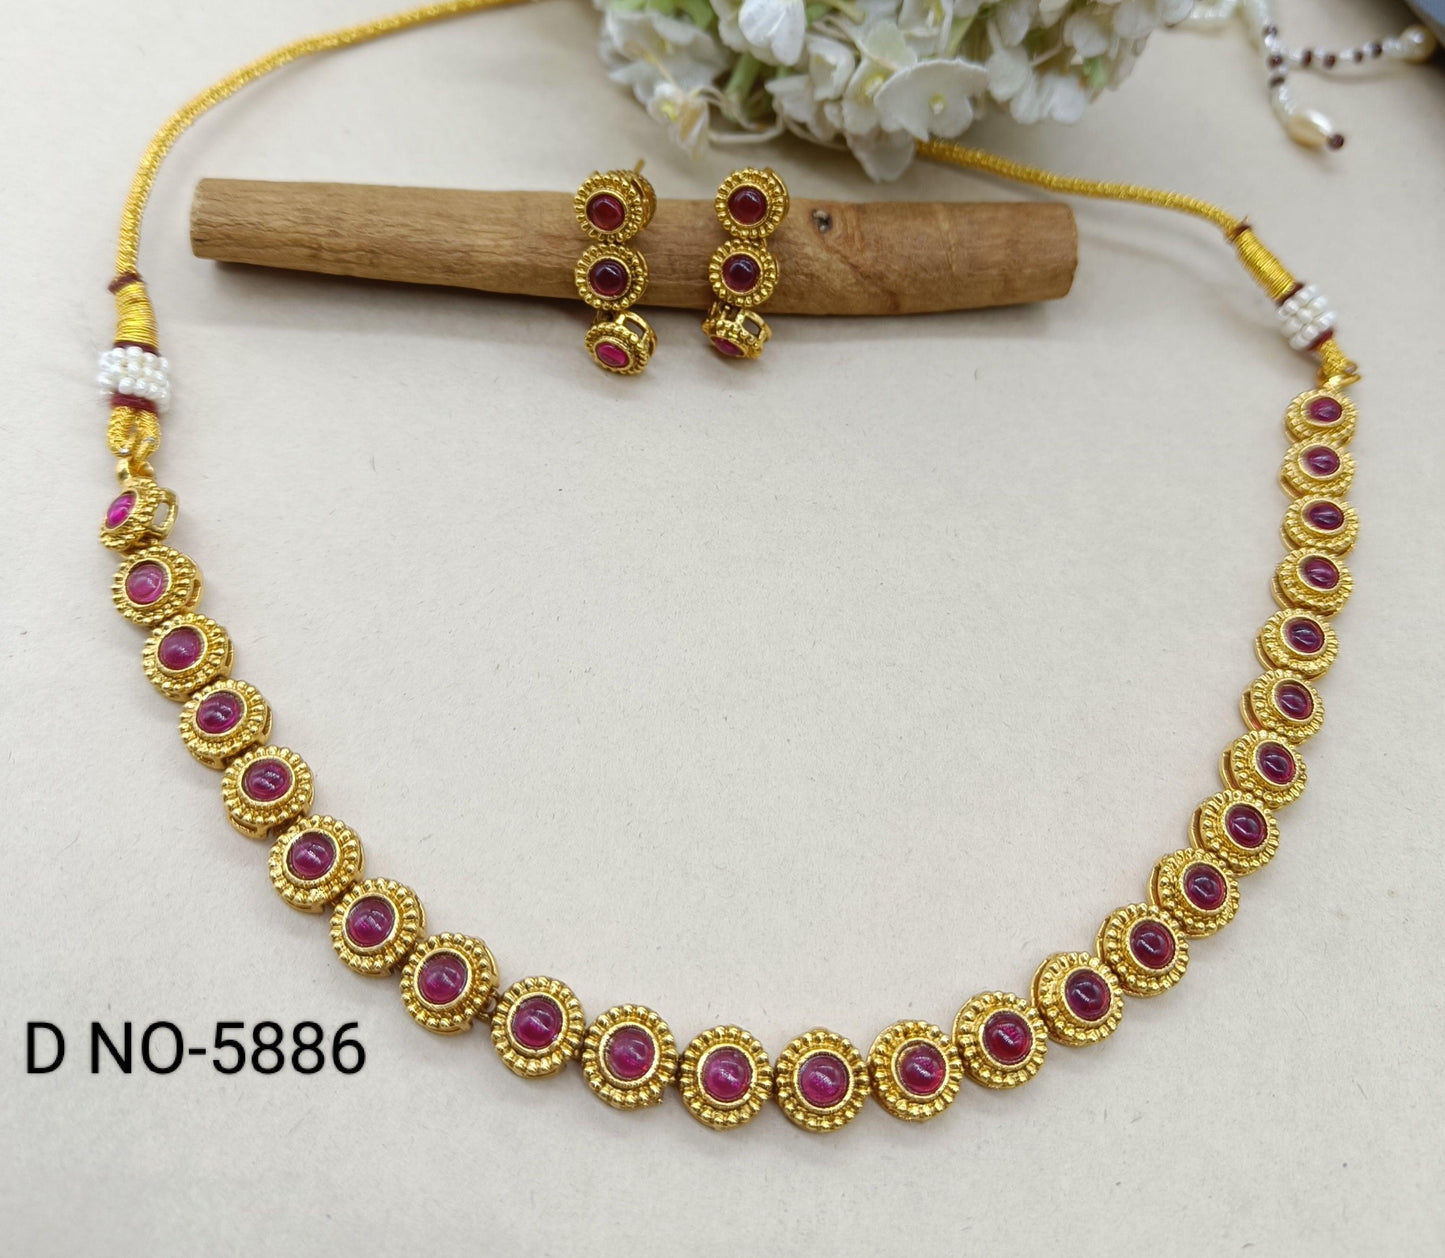 Antique Golden Necklace Set 5886 D3 - rchiecreation